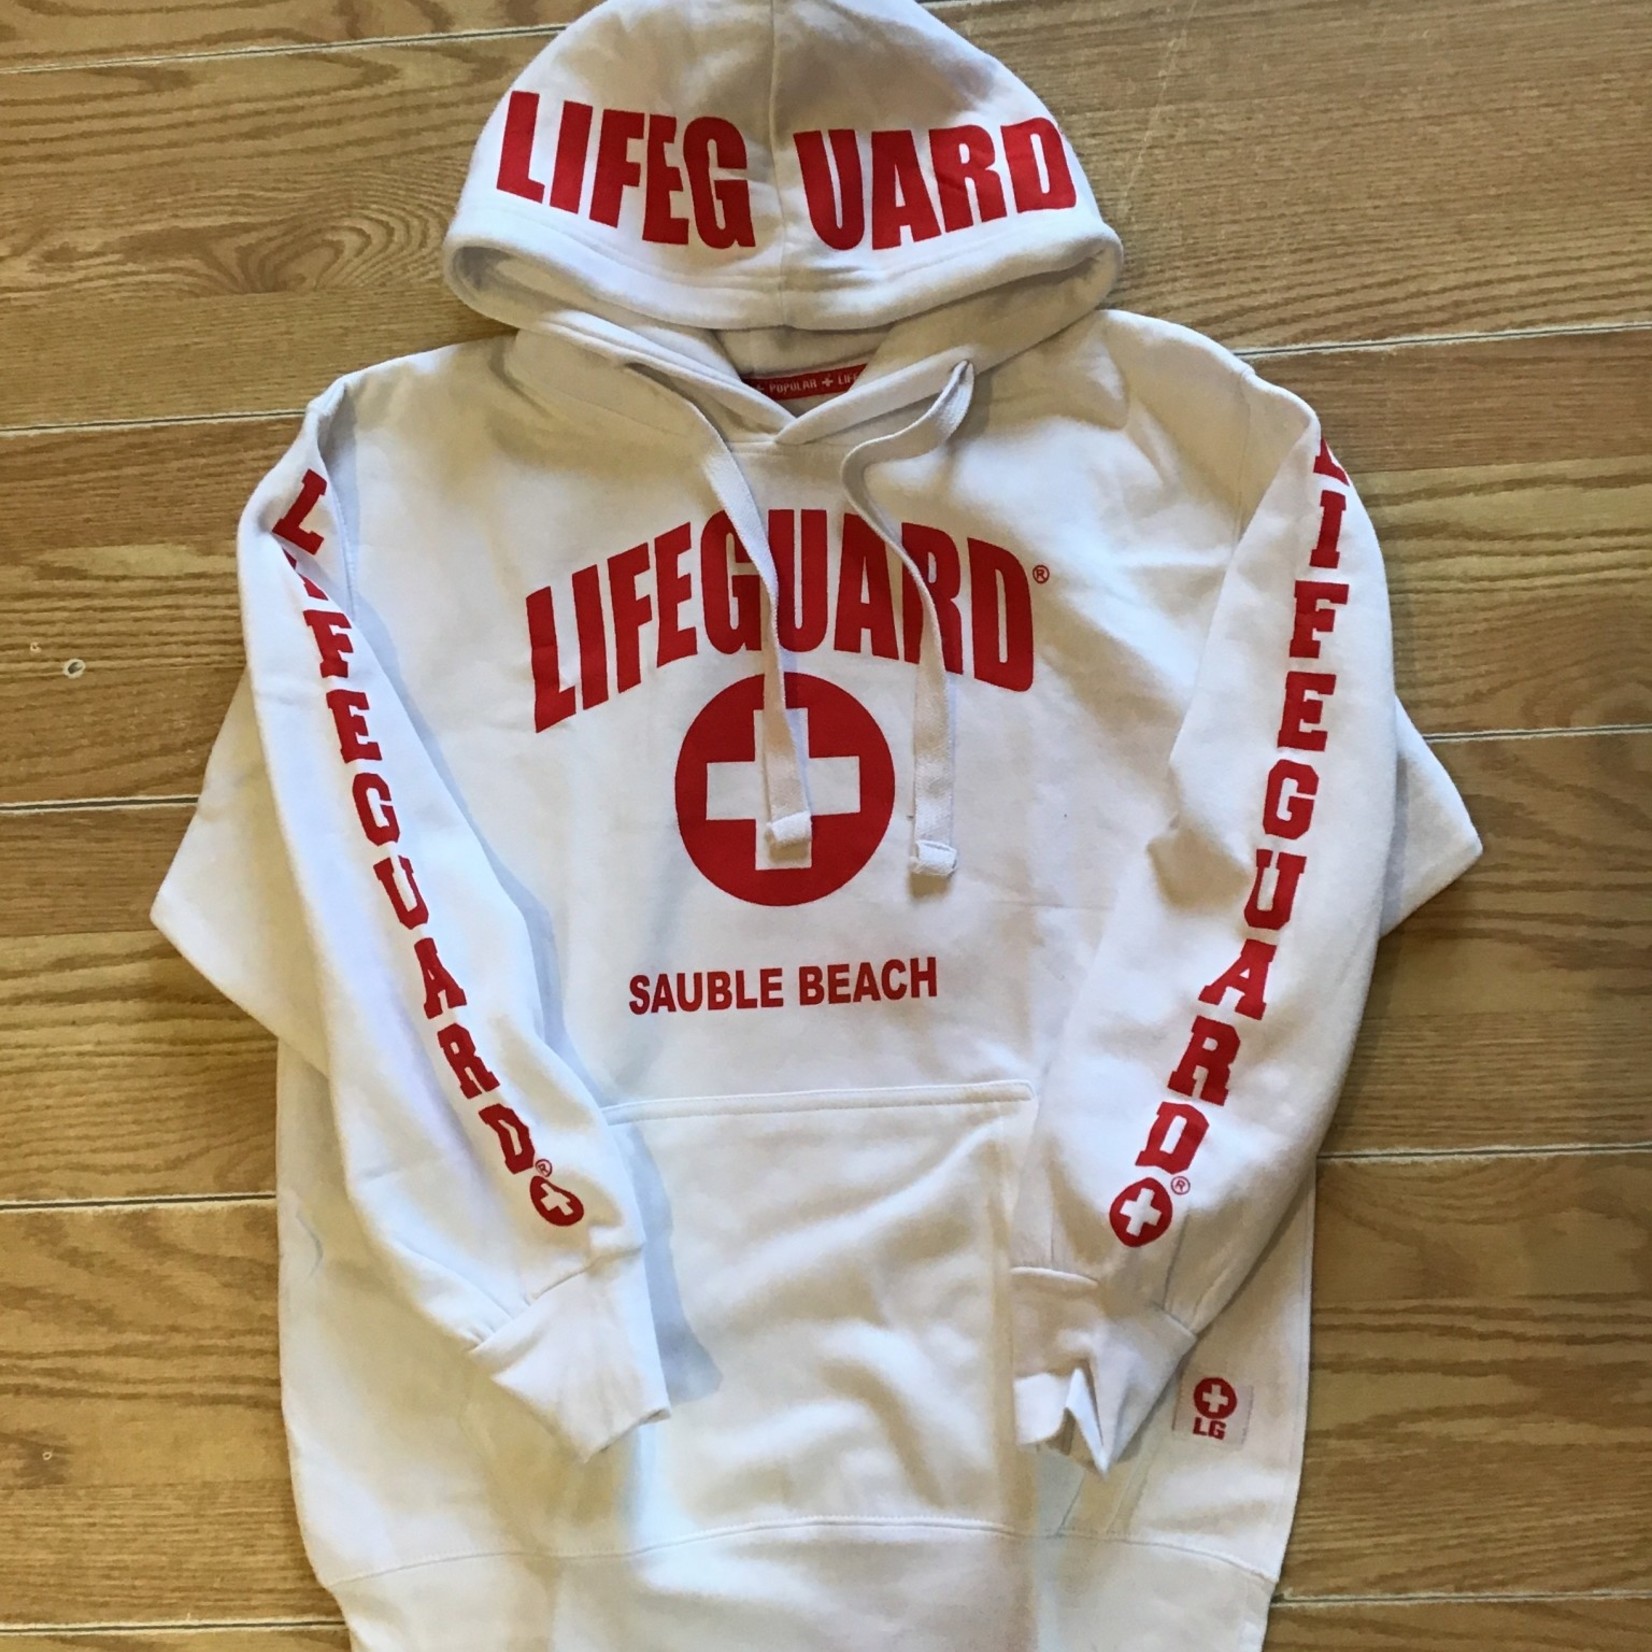 Lifeguard Lifeguard p/o hood Sauble Beach